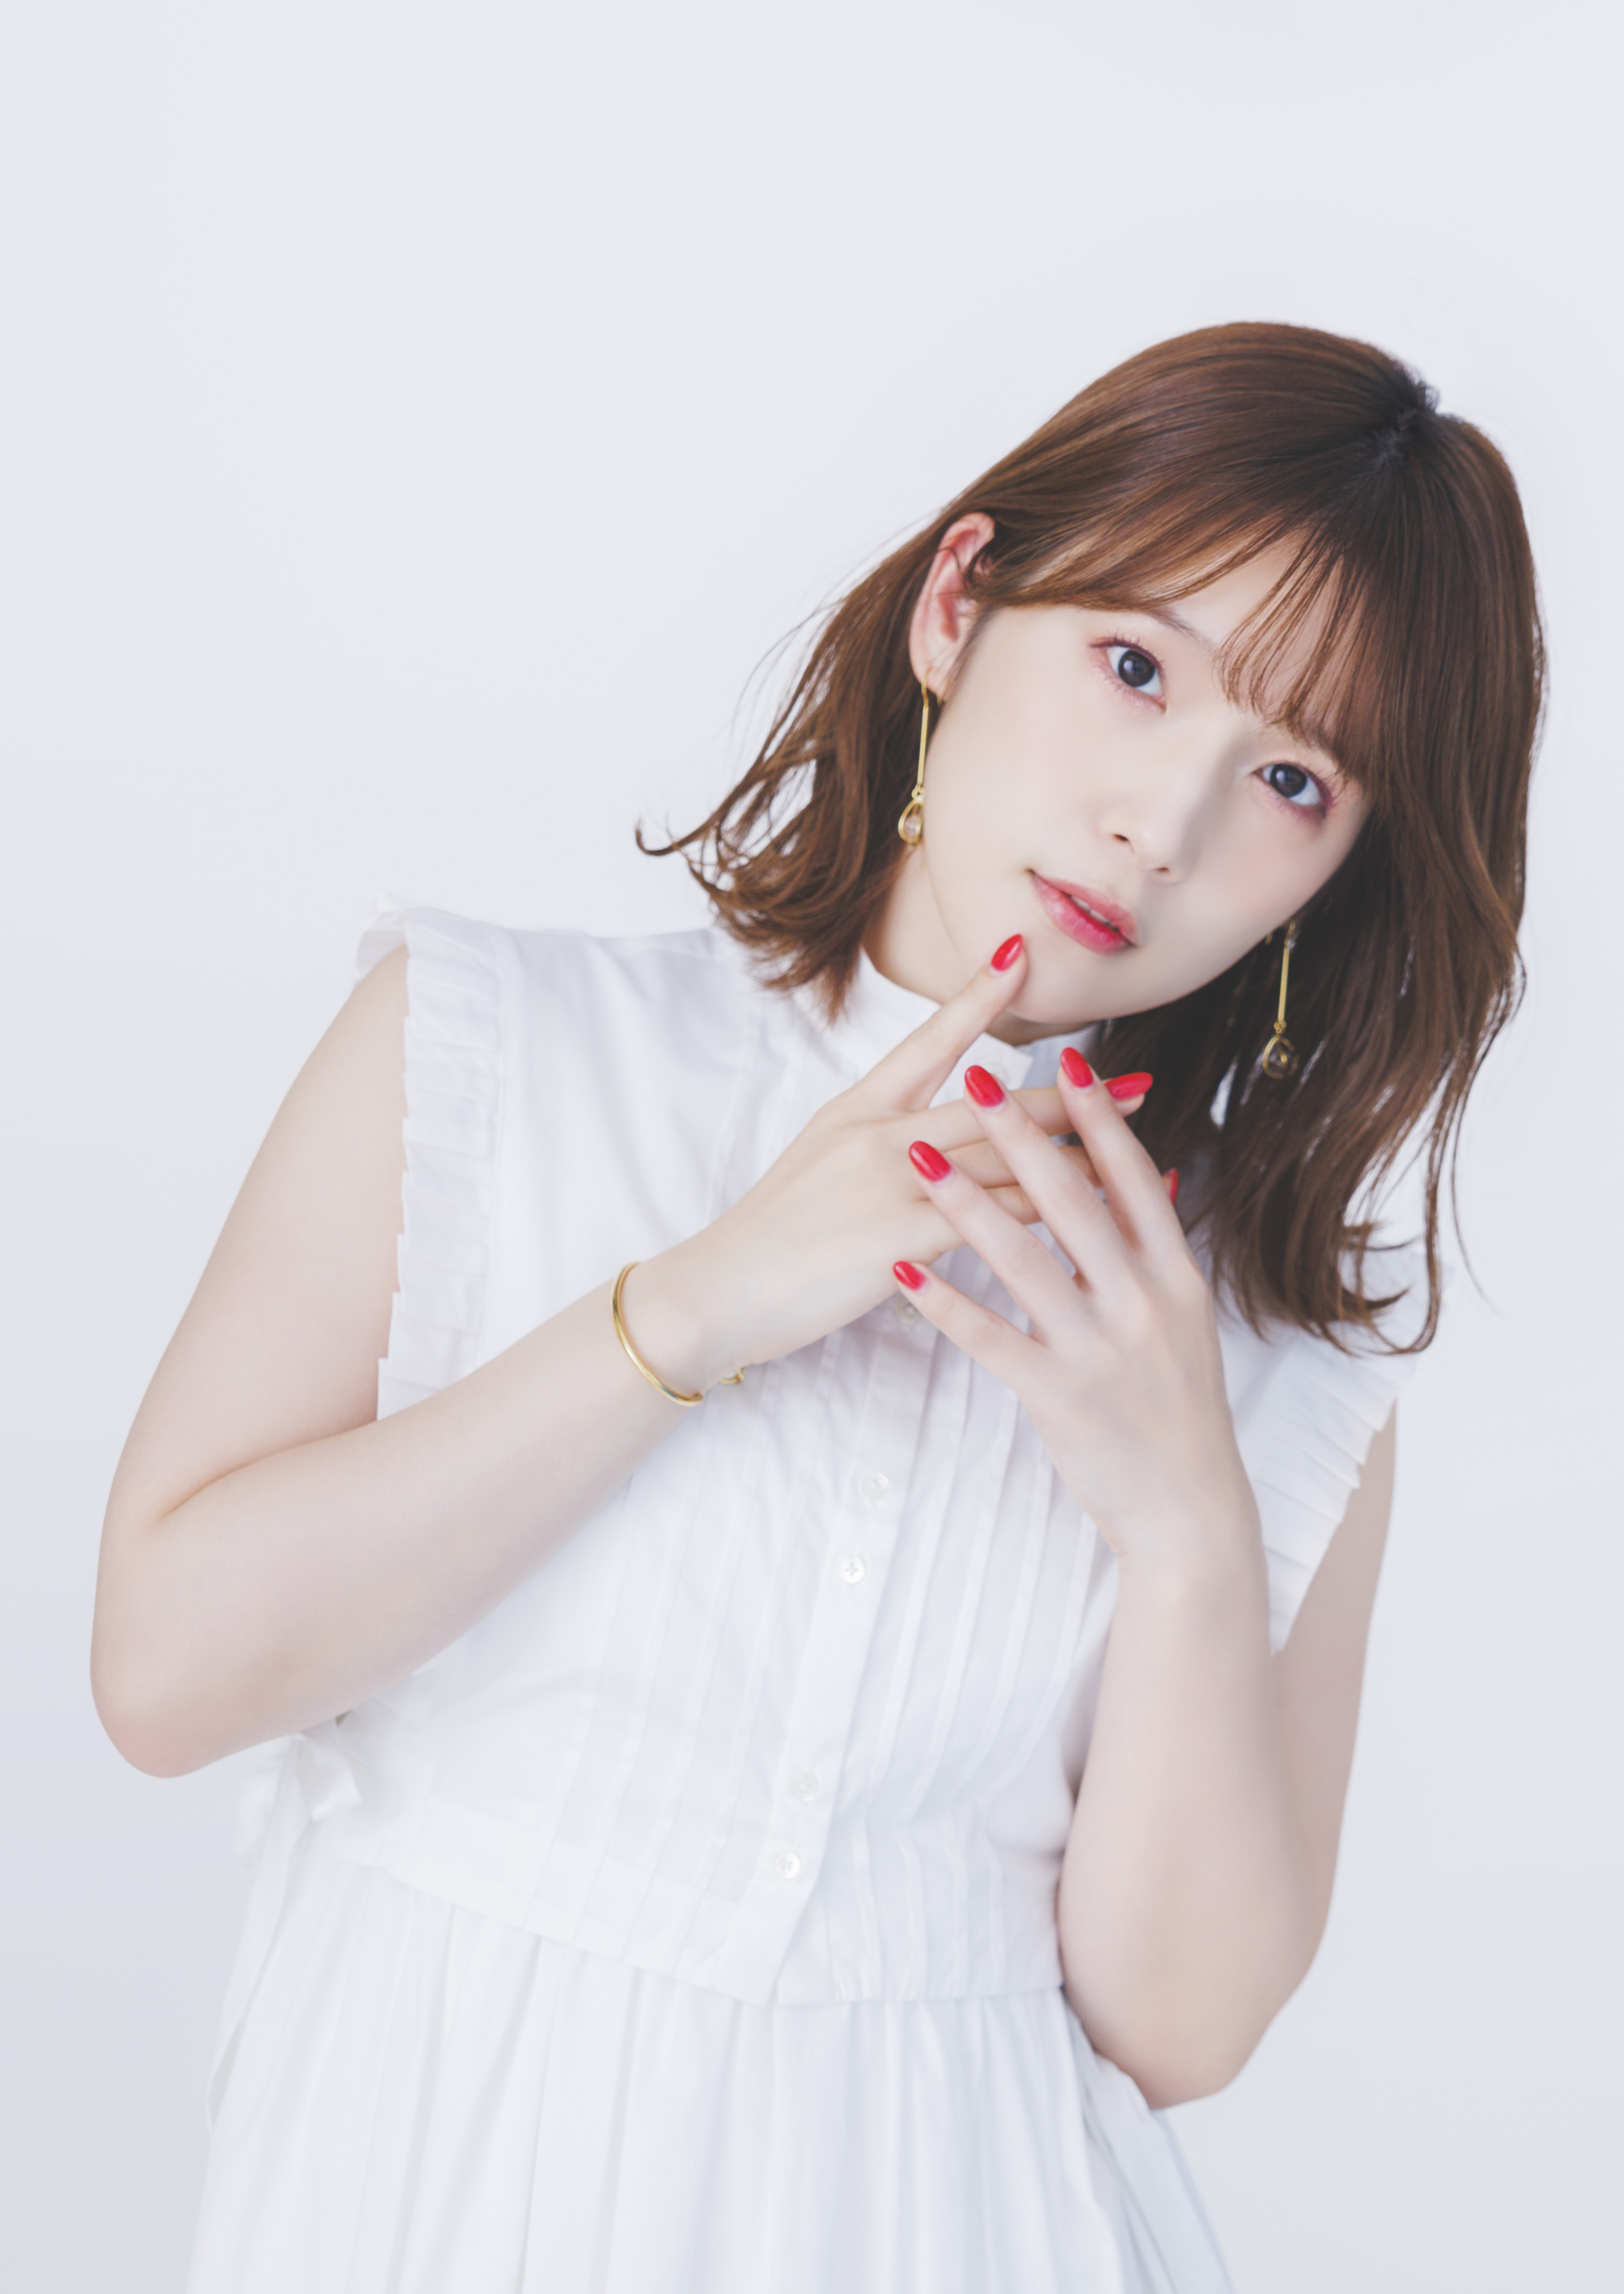 Maaya Uchida's agency profile photo